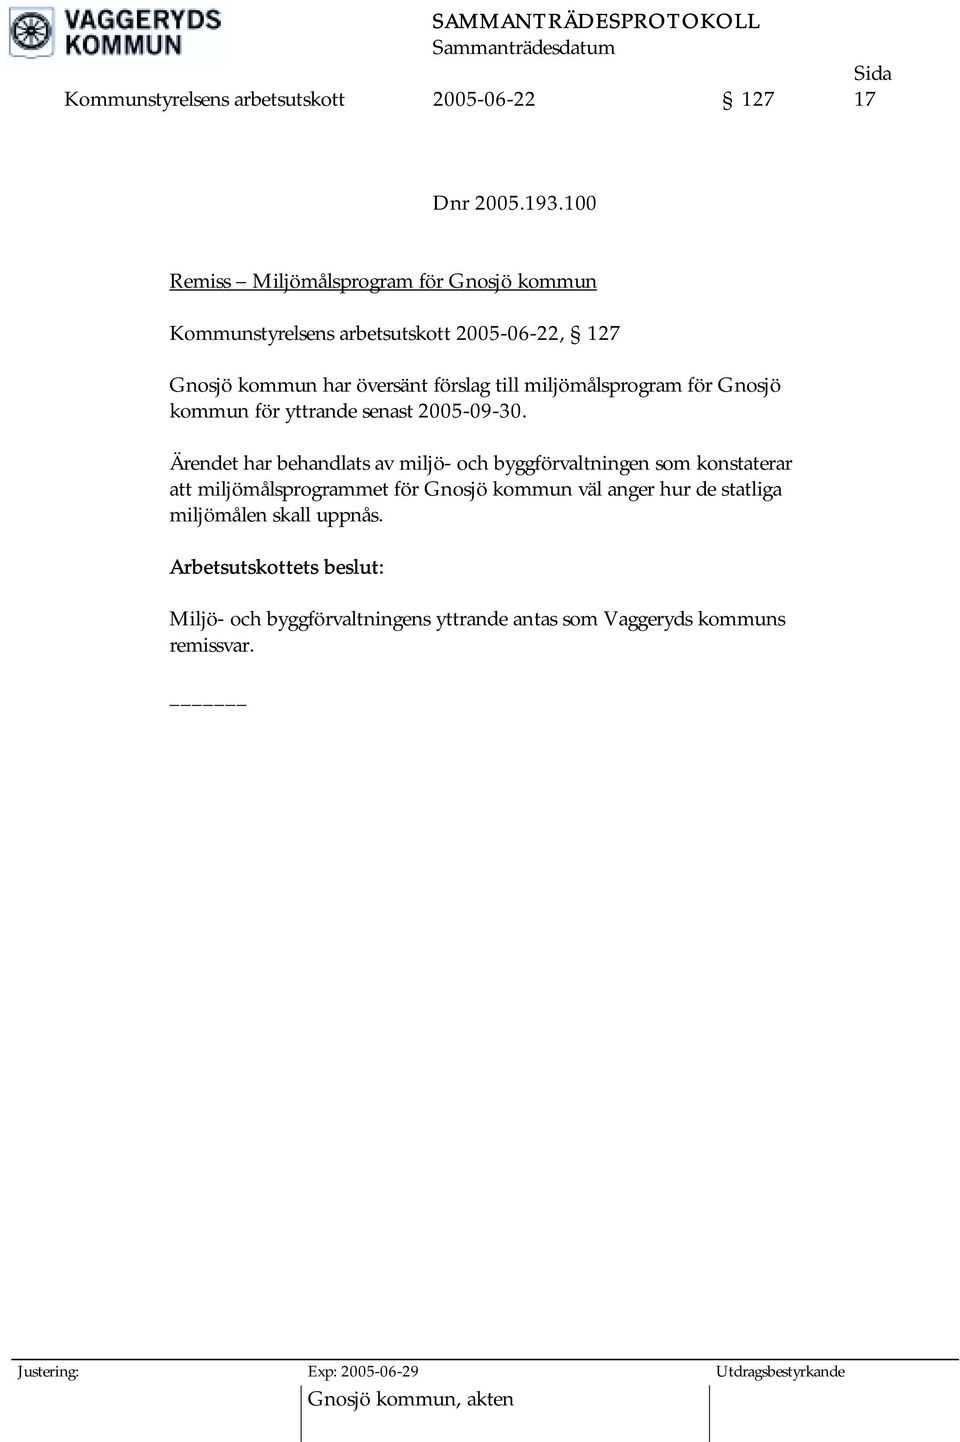 till miljömålsprogram för Gnosjö kommun för yttrande senast 2005-09-30.